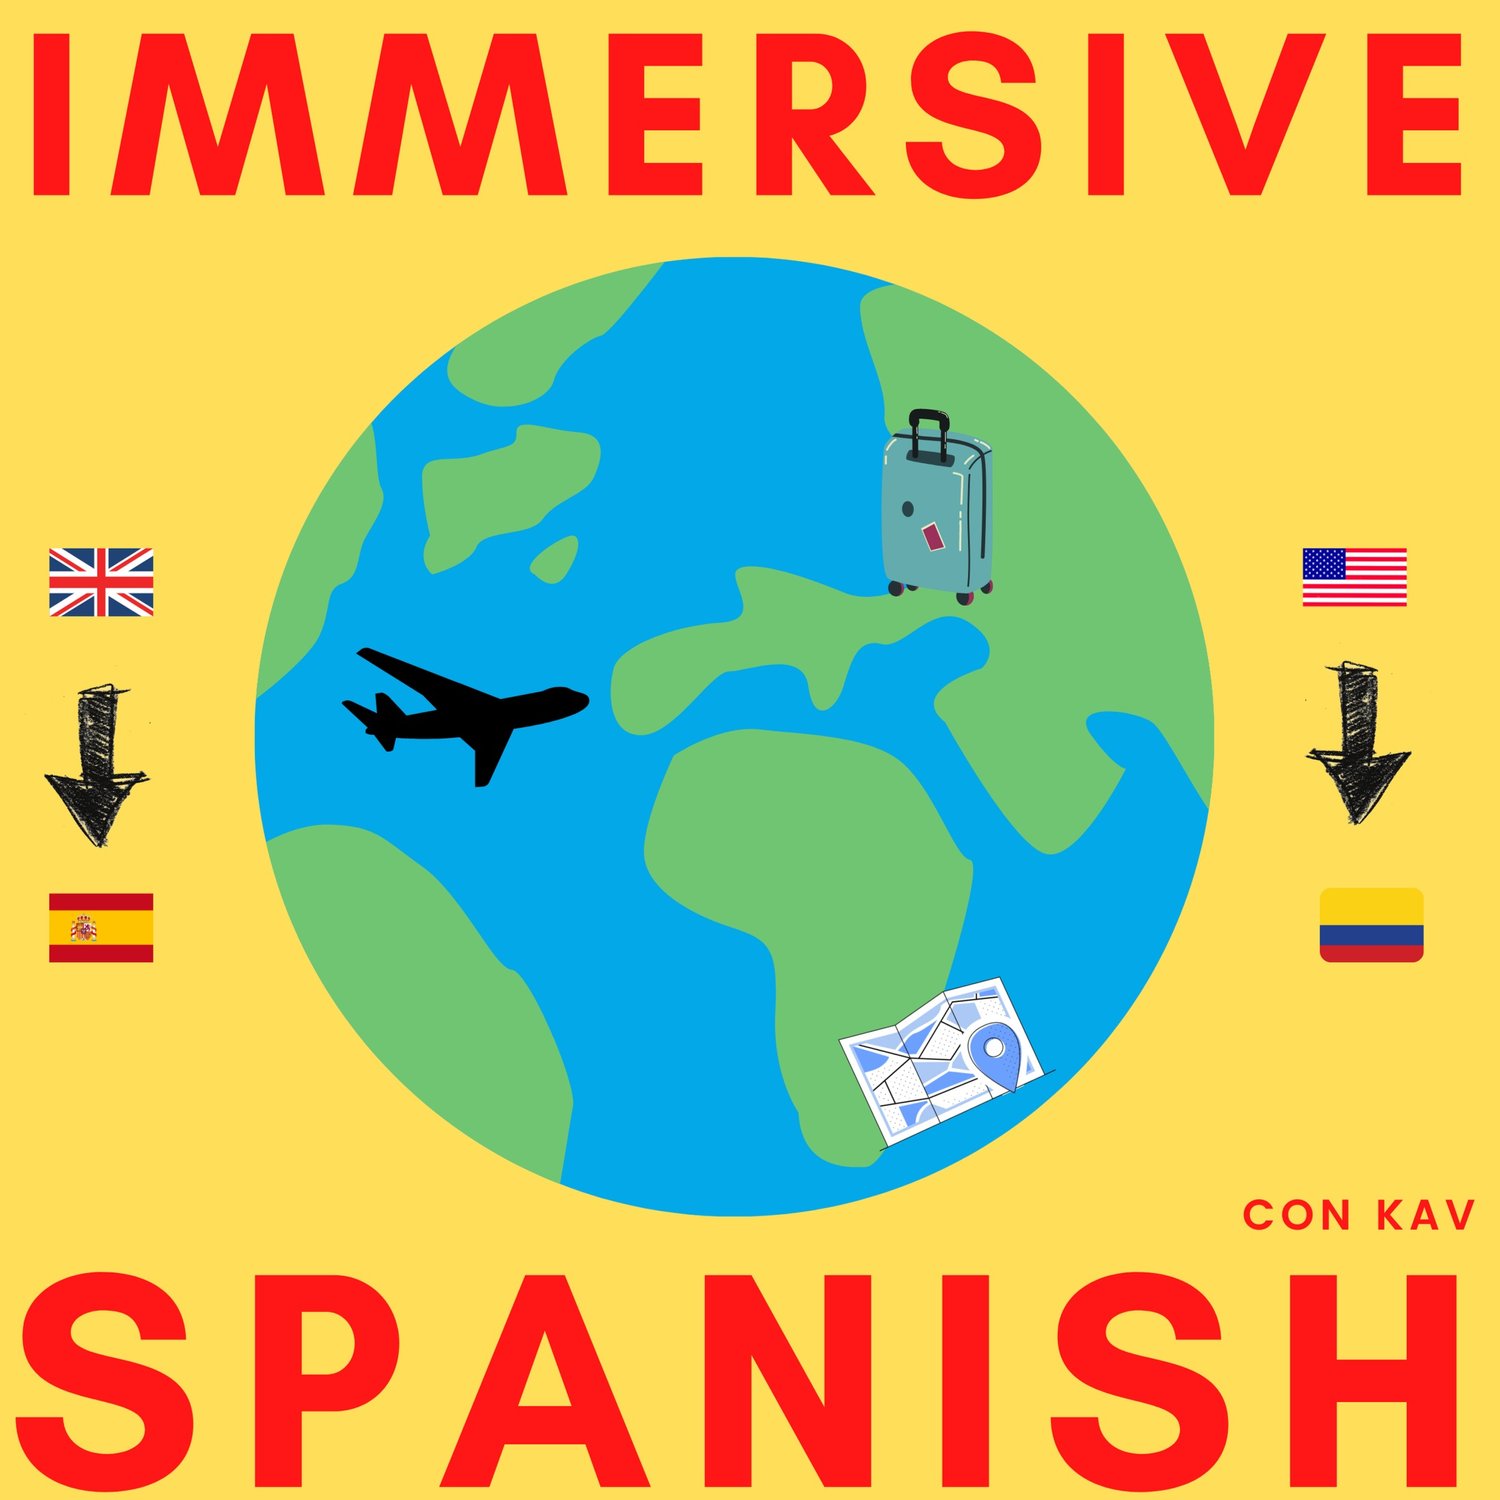 Immersive Spanish